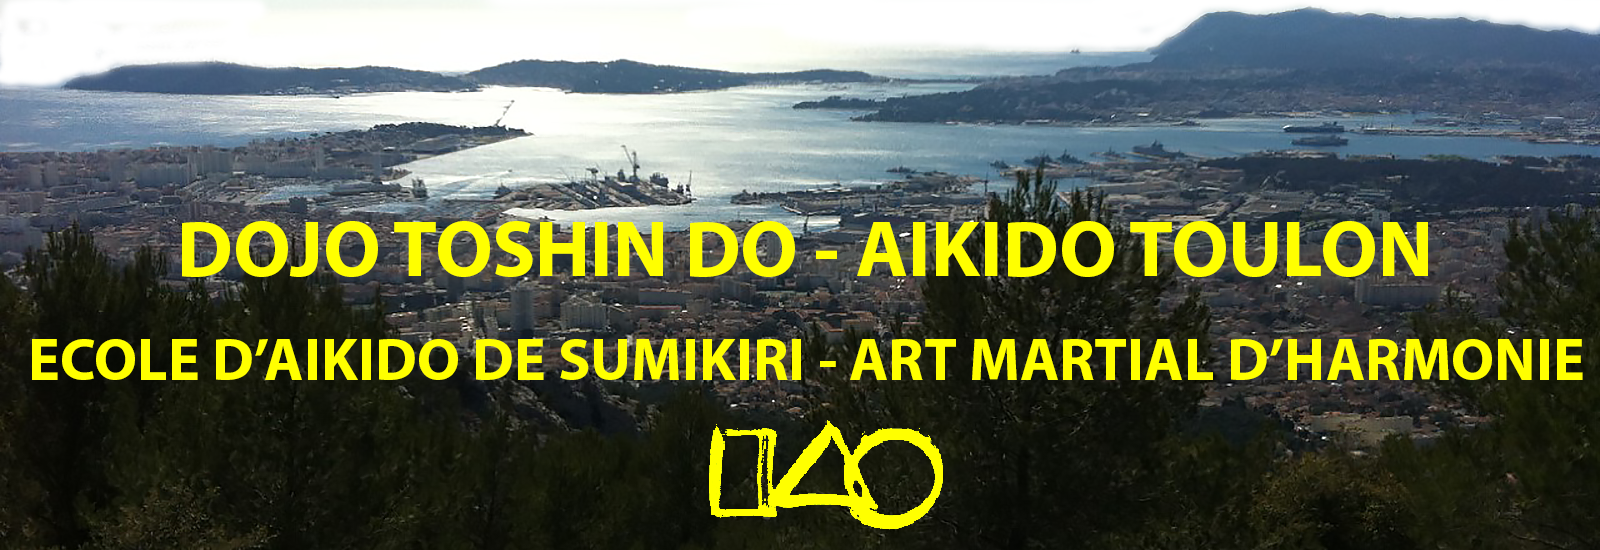 Aikido-Toulon-Dojo-Toshindo